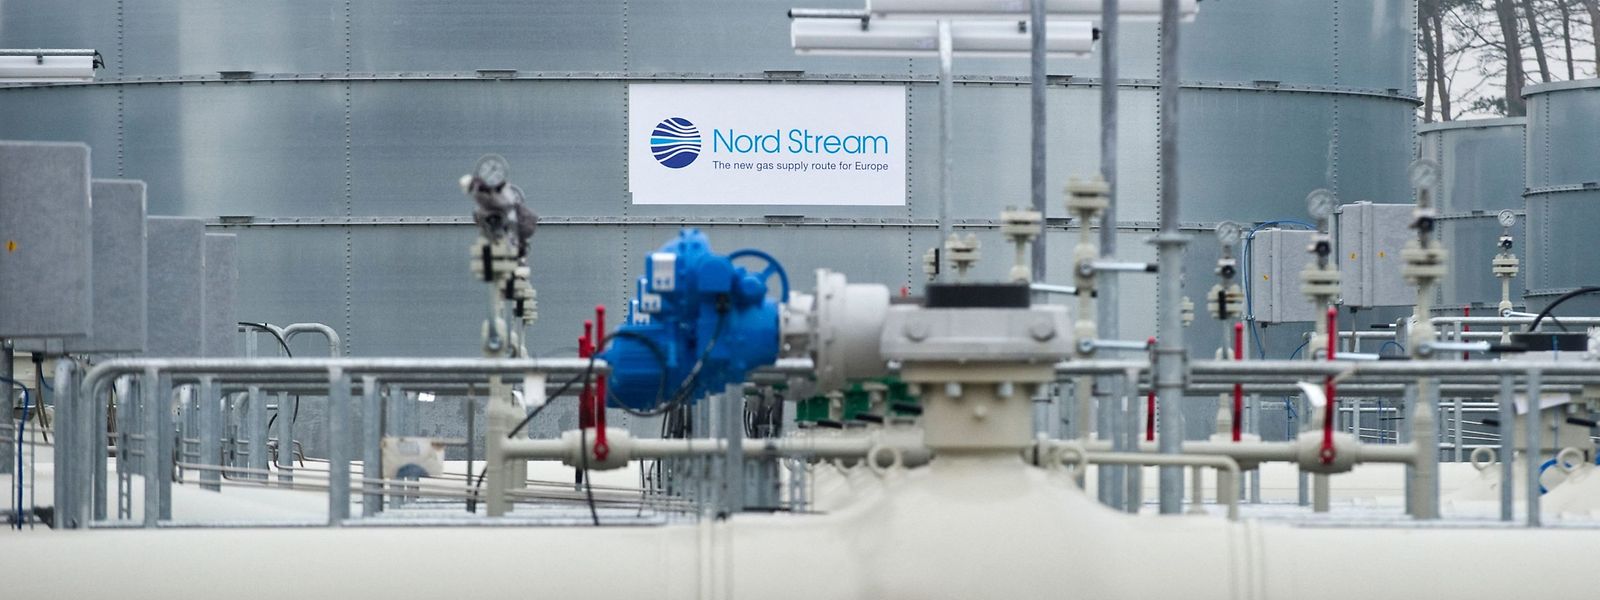 Netzdaten zufolge hat der Gasfluss durch die Ostsee-Pipeline Nord Stream 1 am Donnerstagmorgen das angekündigte Niveau erreicht. 